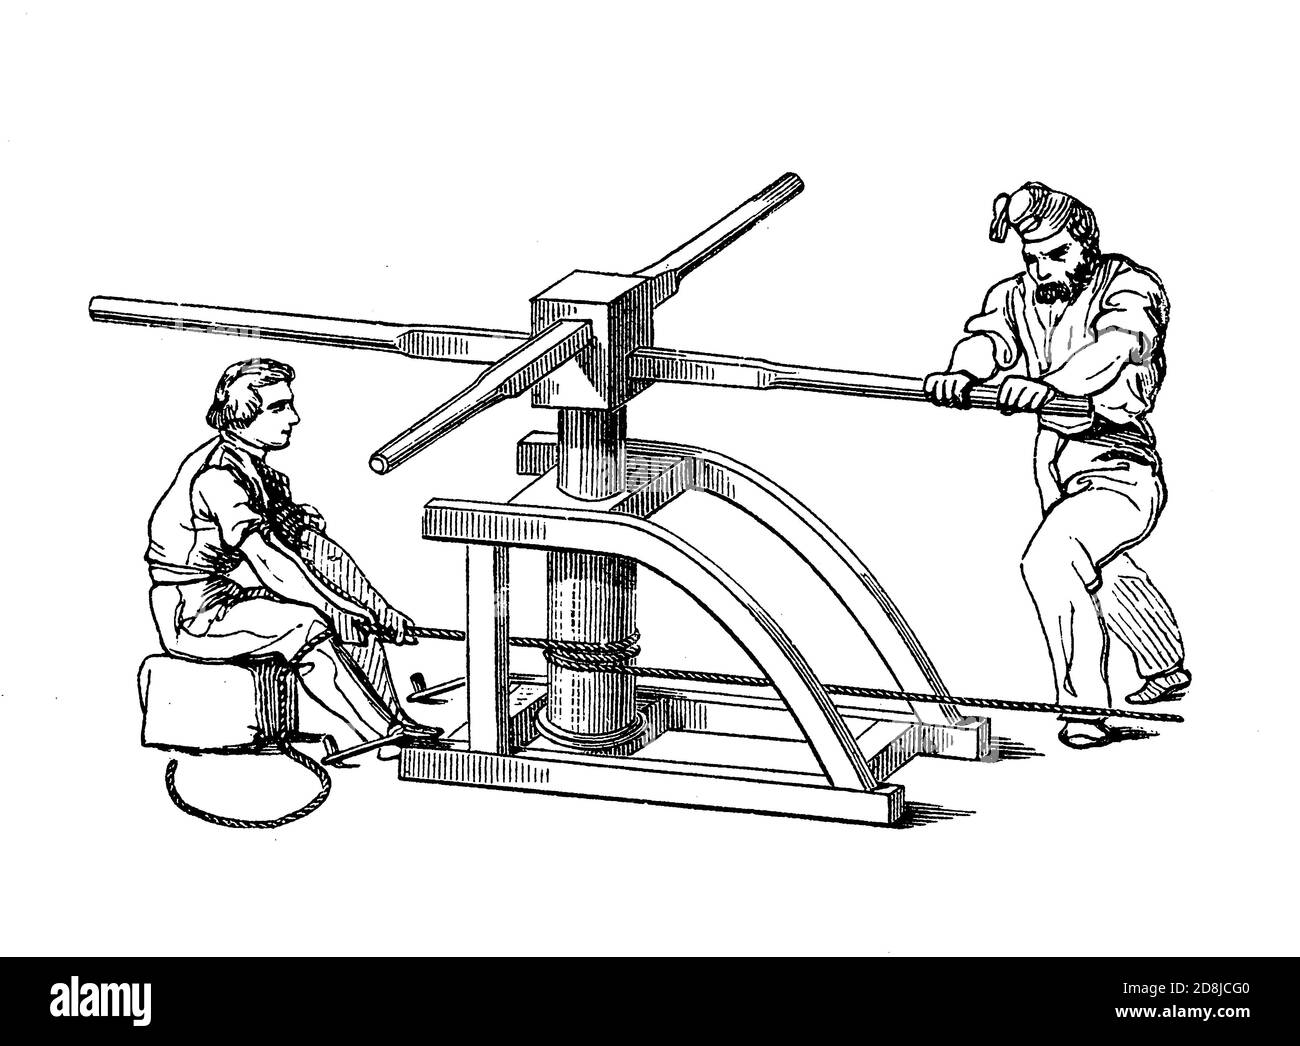 Vintage-Illustration von zwei Matrosen, die eine Drehmaschine mit vertikalem Achs verwalten, die für den Einsatz auf Segelschiffen entwickelt wurde, um die Zugkraft der Seeleute beim Schleppen von Seilen, Kabeln und Ankern zu multiplizieren Stockfoto